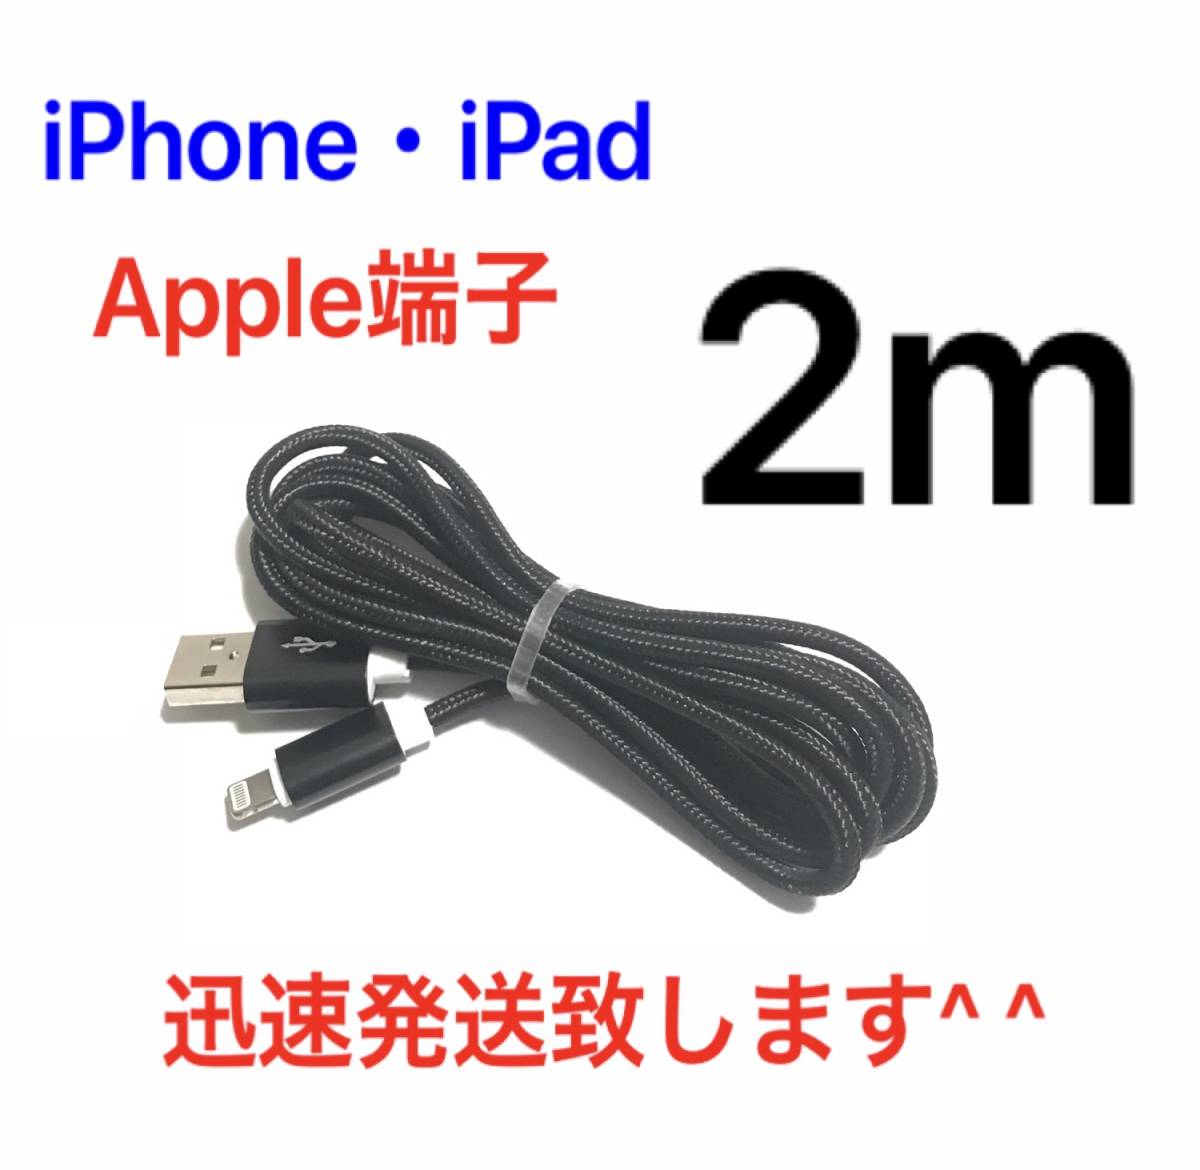  черный 2m 1 шт. iPhone кабель зарядное устройство подсветка кабель внезапный скорость зарядка разъединение предотвращение высокая скорость зарядка iPhone14 iPhone13 iPhone12 iPad нейлон 